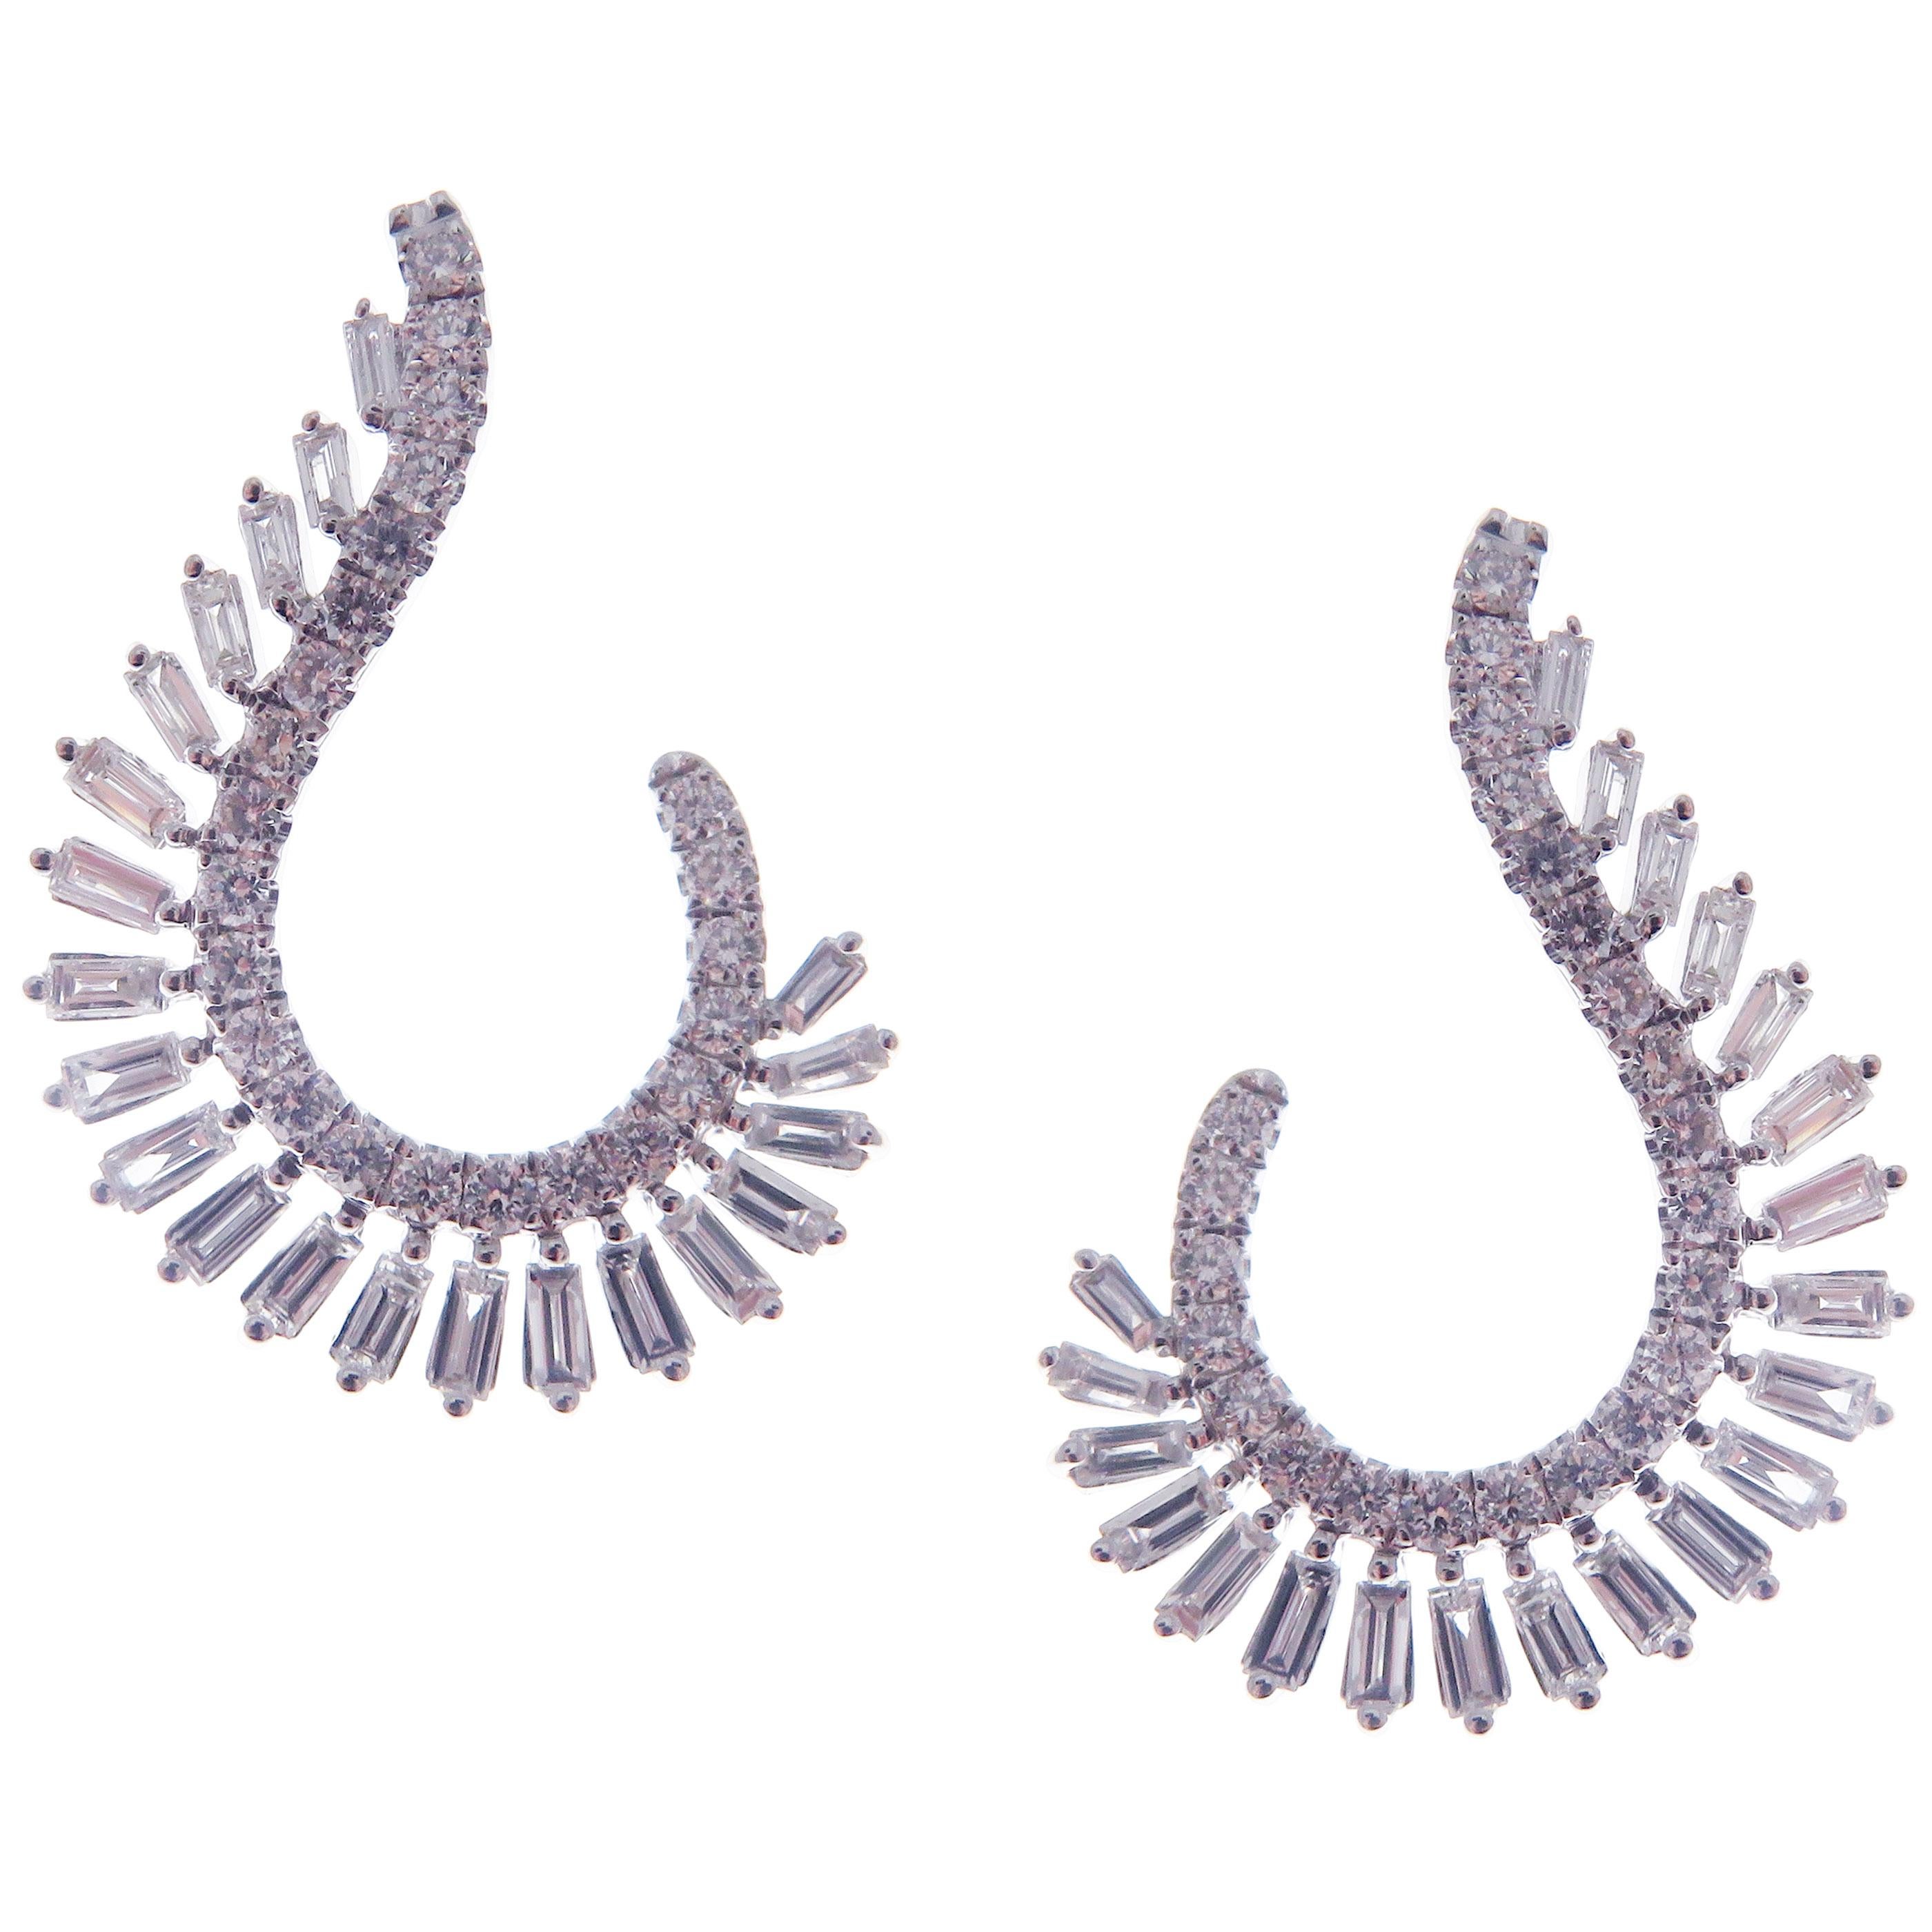 Diese trendigen Ohrringe mit runden und Baguette-Diamanten sind aus 18-karätigem Weißgold gefertigt und mit 48 runden weißen Diamanten von insgesamt 0,51 Karat und 42 weißen Baguette-Diamanten von insgesamt 0,88 Karat besetzt.
Diese Ohrringe werden